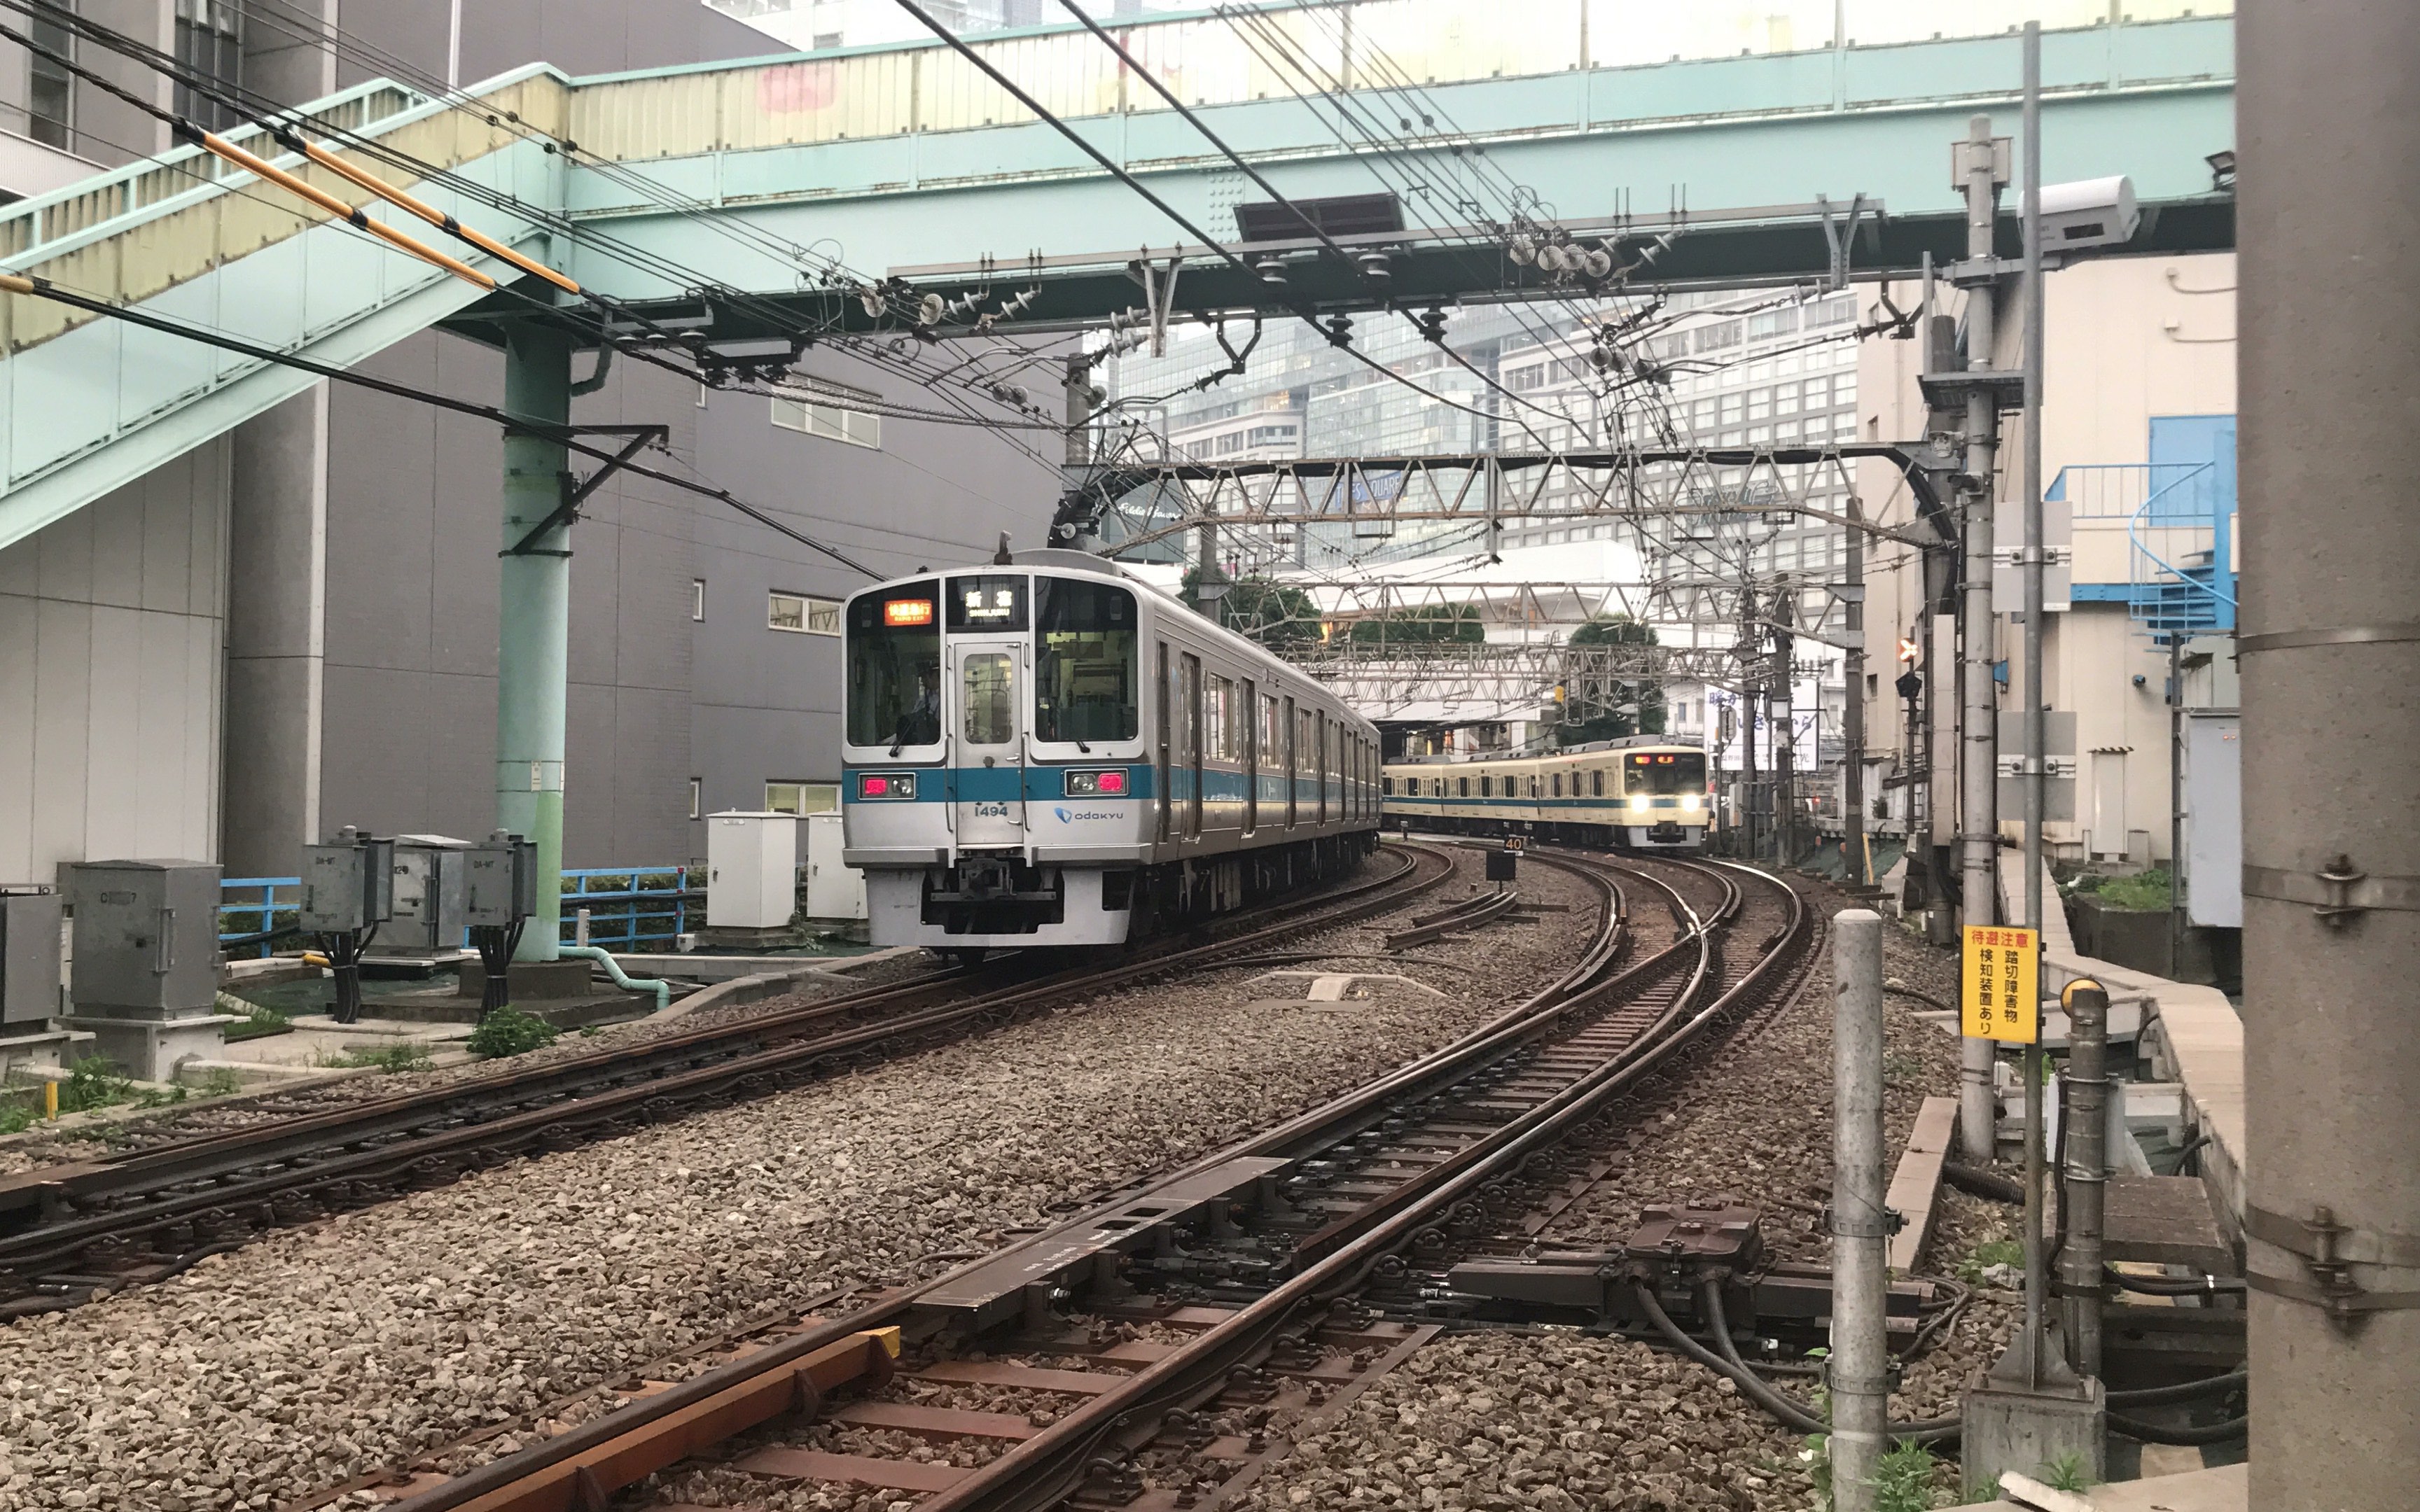 小田急电铁线路图图片